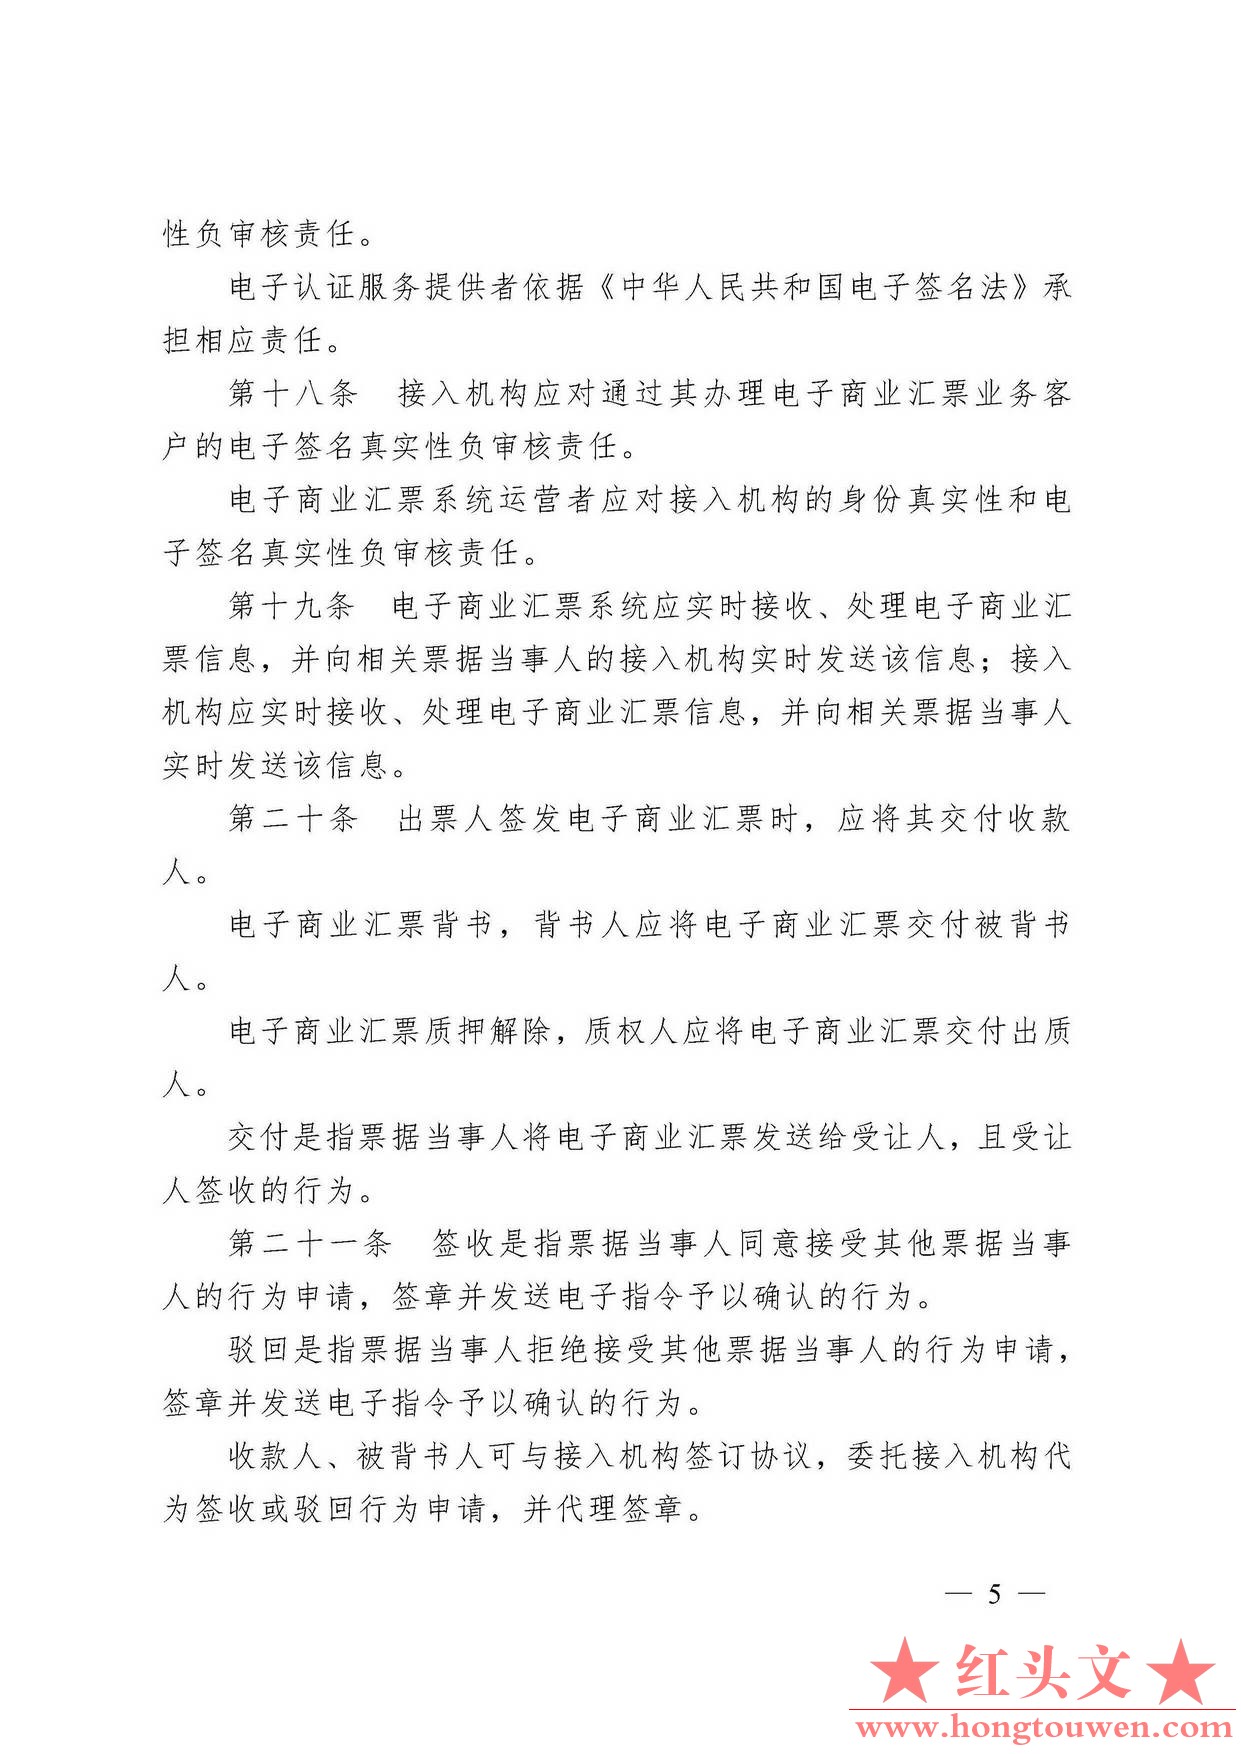 中国人民银行令[2009]2号-电子商业汇票管理办法_页面_05.jpg